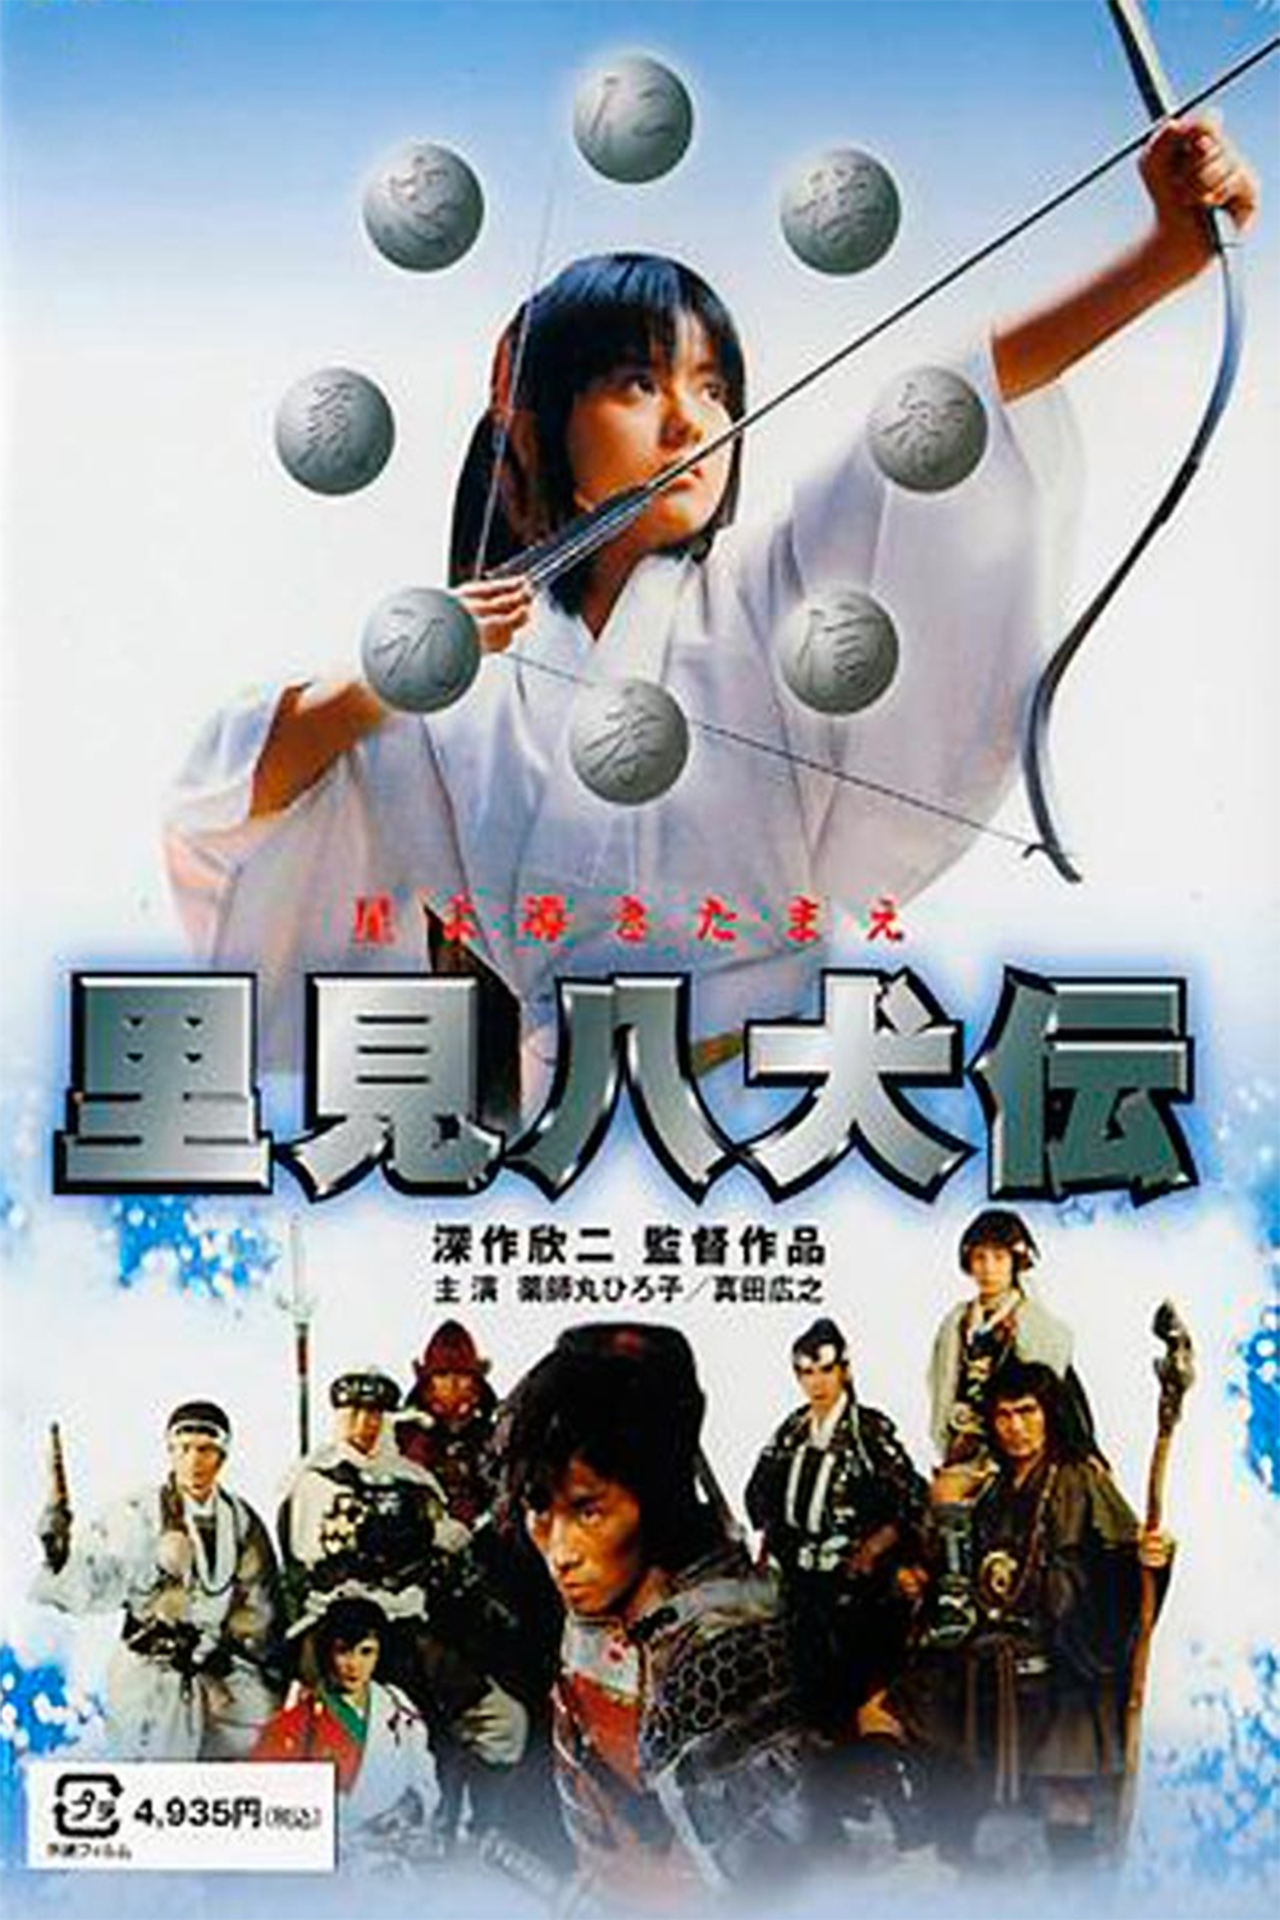 هیرویوکی سانادا در صحنه فیلم سینمایی Legend of Eight Samurai به همراه Masaki Kyômoto، Hiroko Yakushimaru، Etsuko Shihomi و شینیچی چیبا